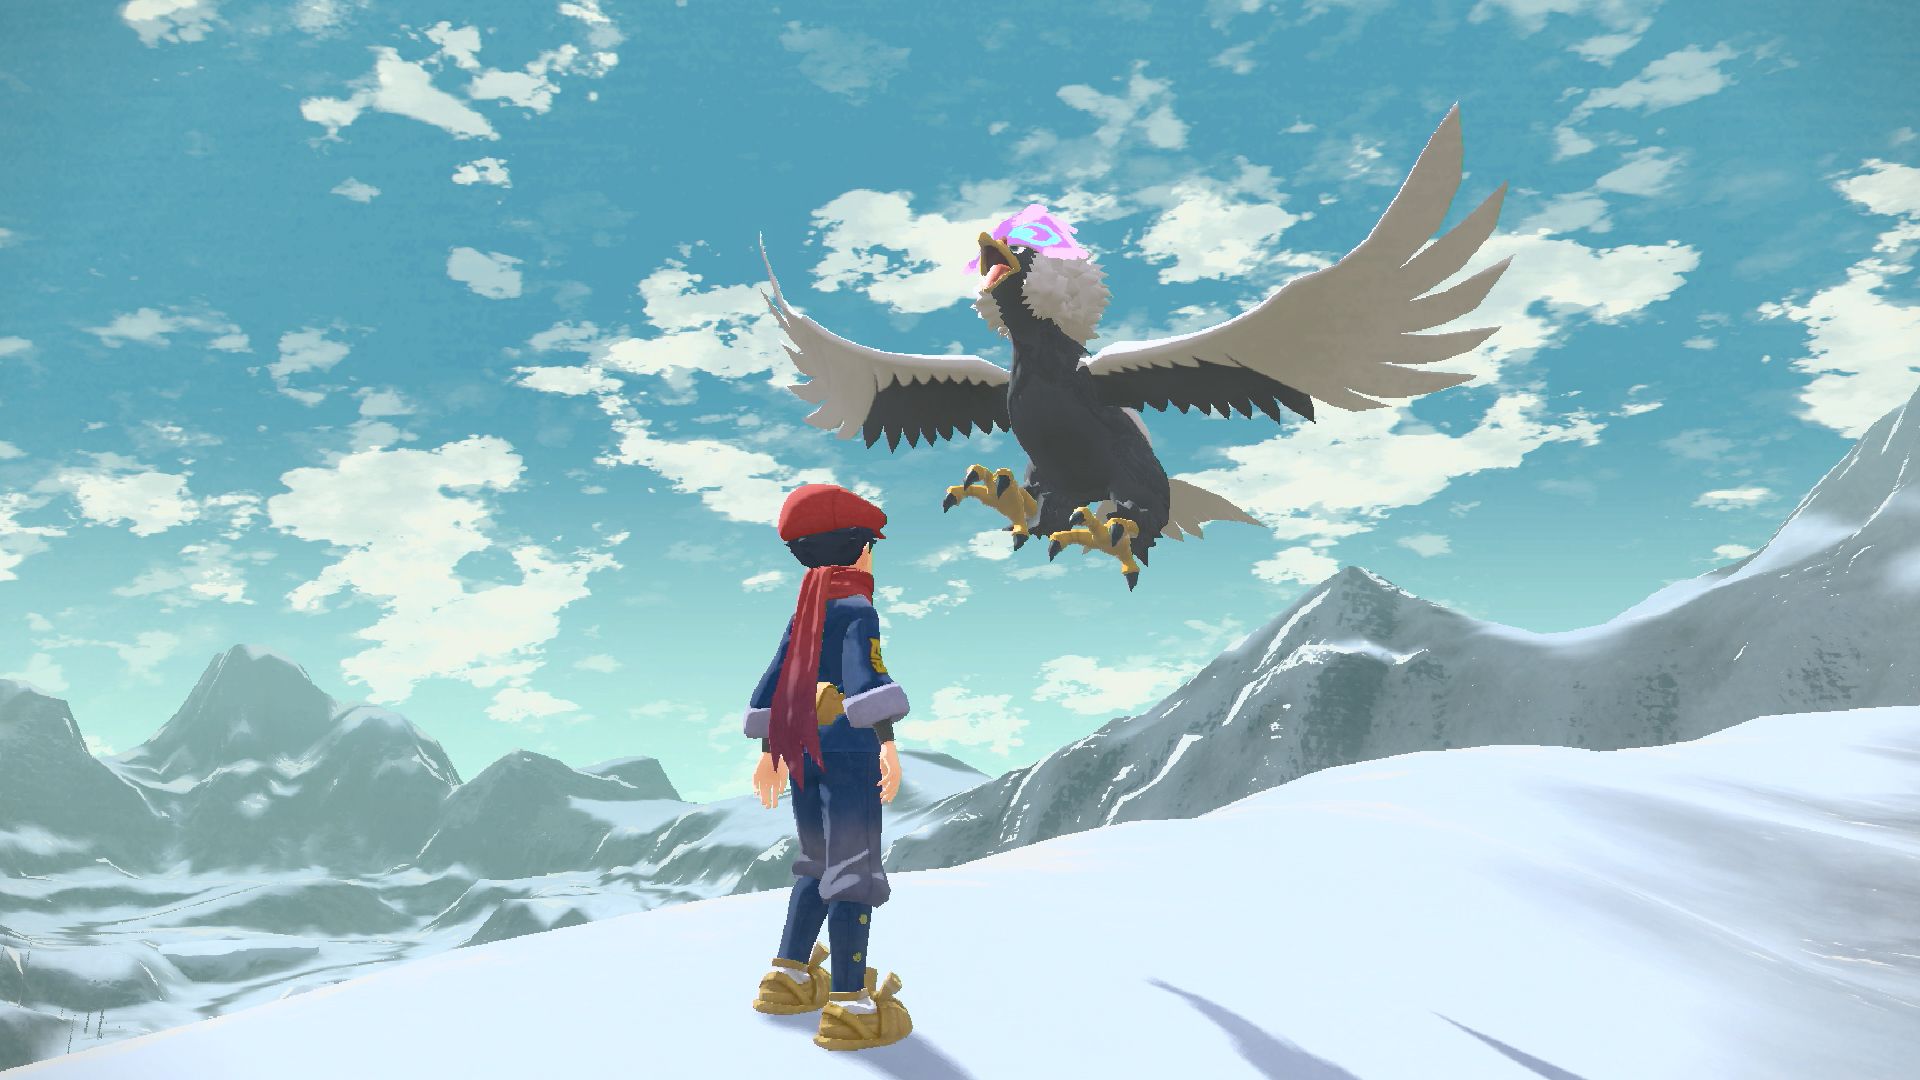 Pokémon Legends: Arceus – Novo trailer destaca as evoluções dos Pokémon,  novos cenários e a história envolvendo Arceus